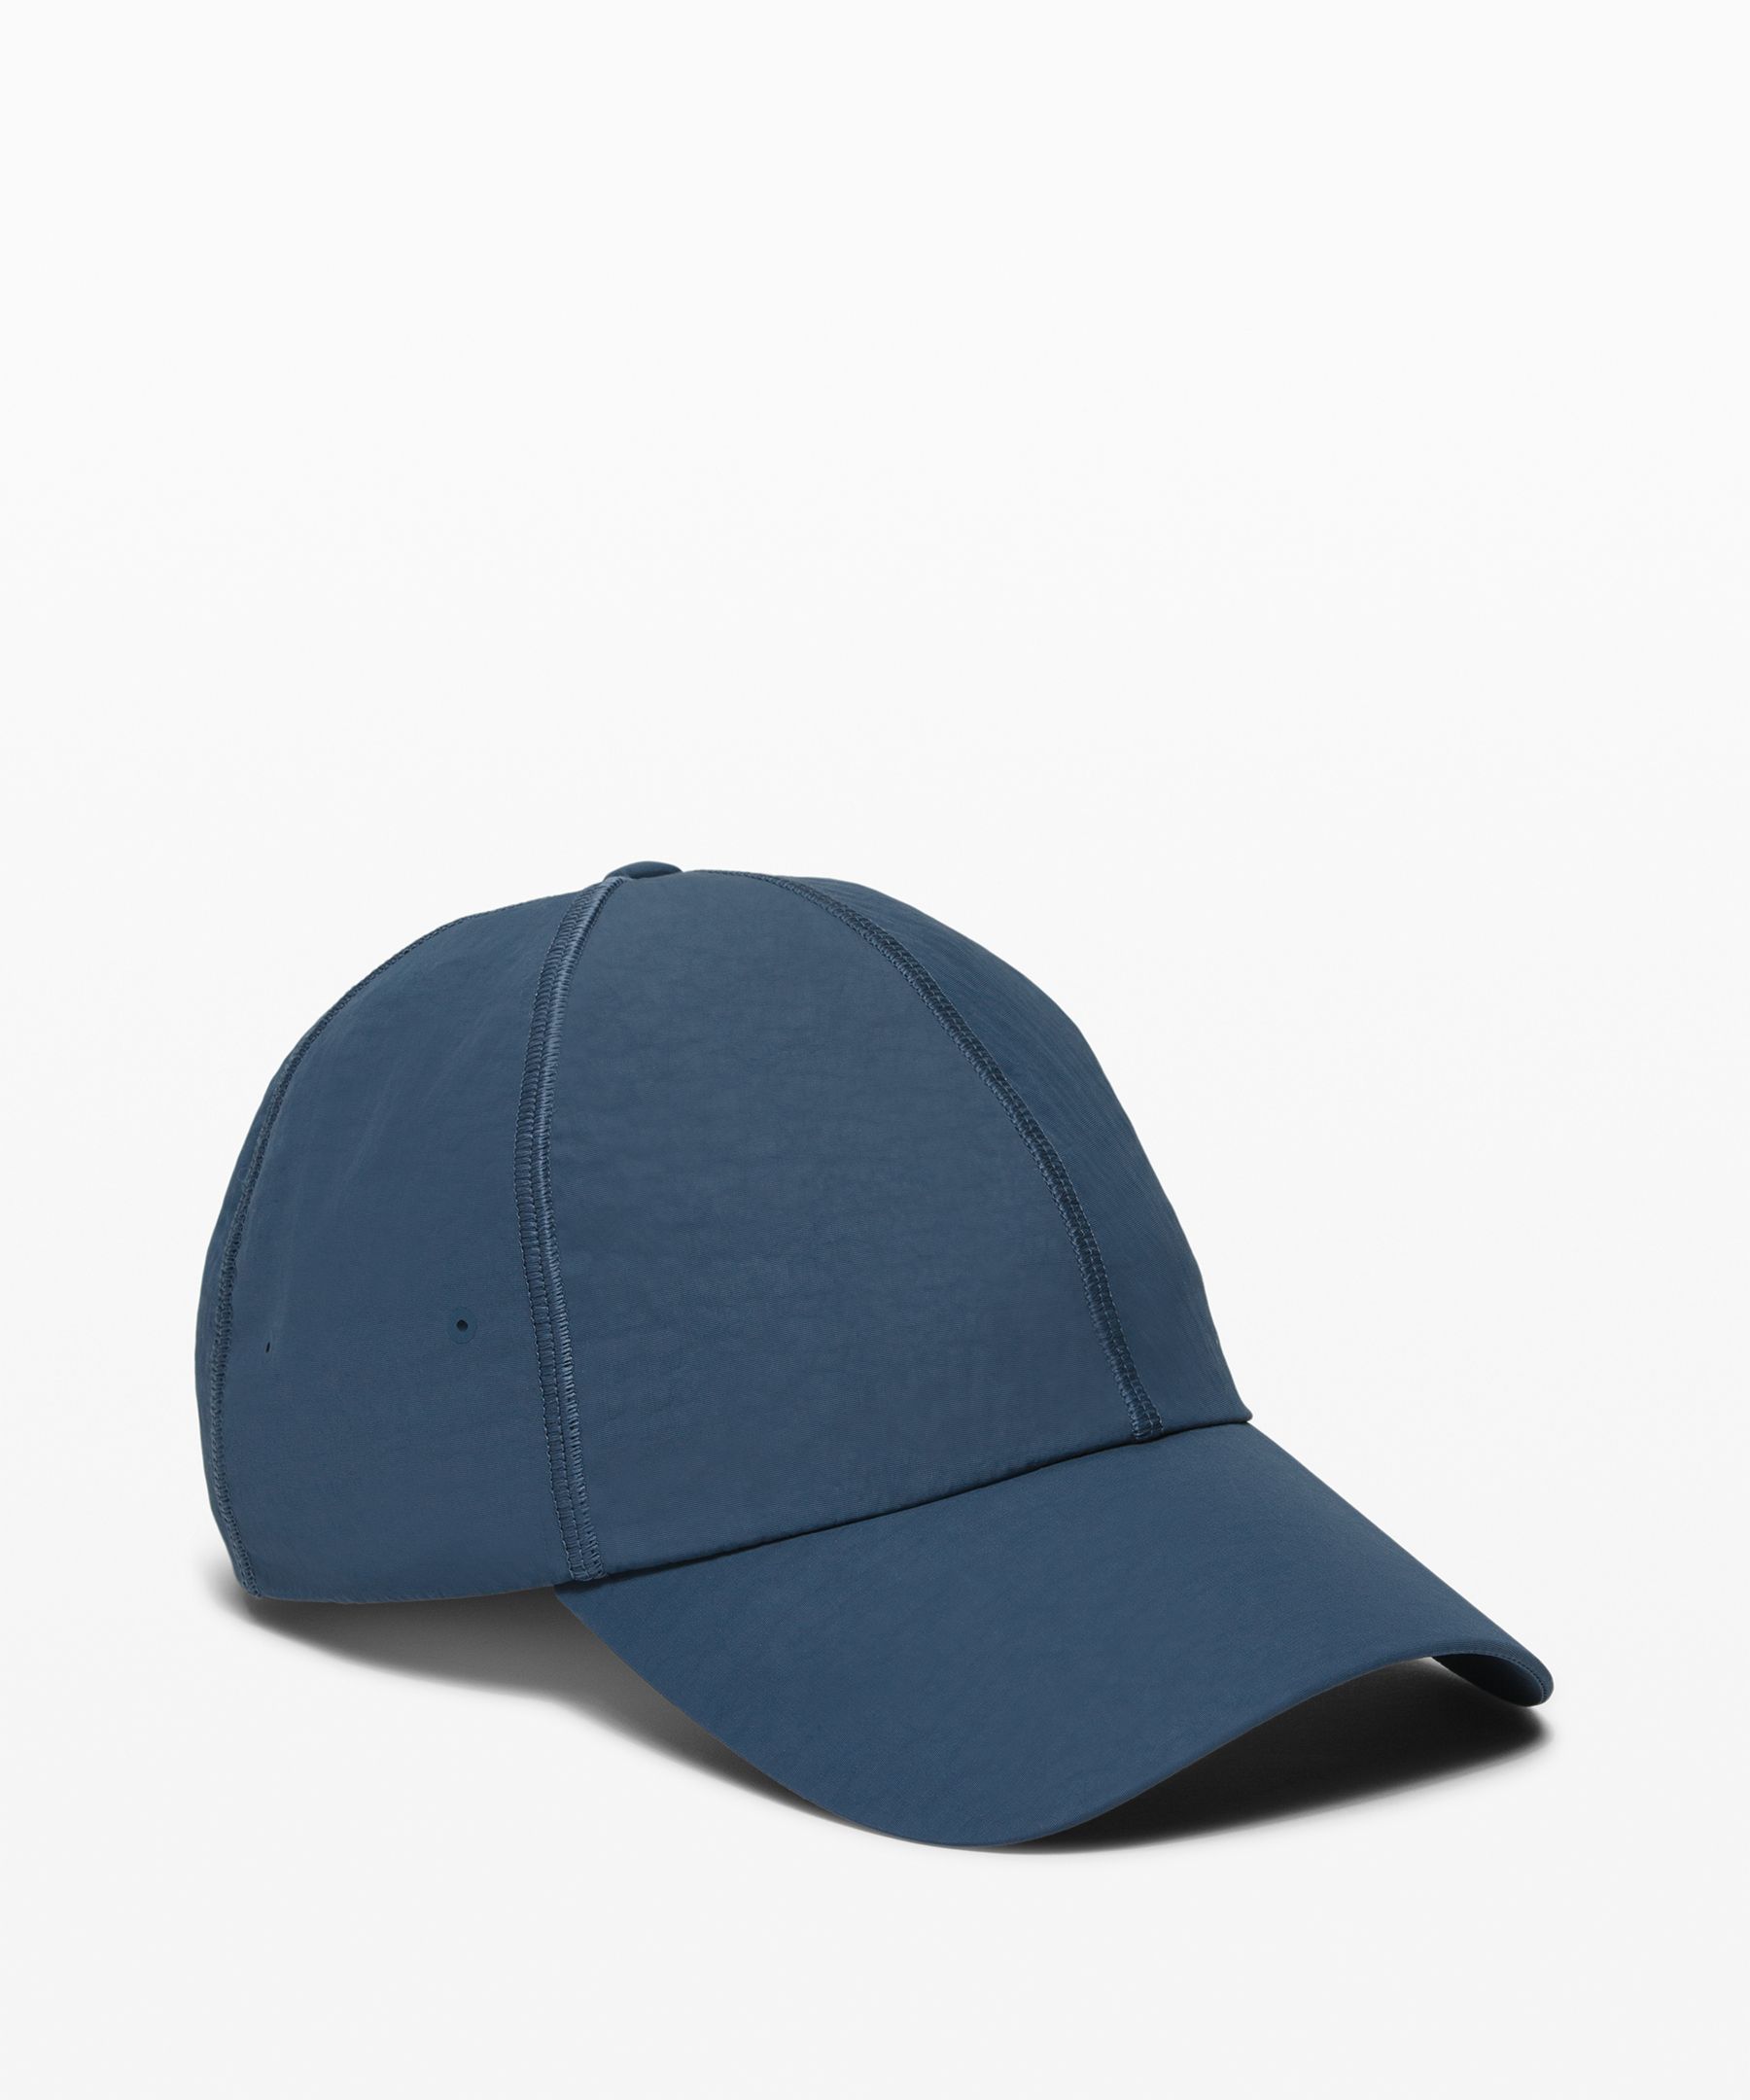 Lululemon Baller Hat Ii Soft In Ink Blue